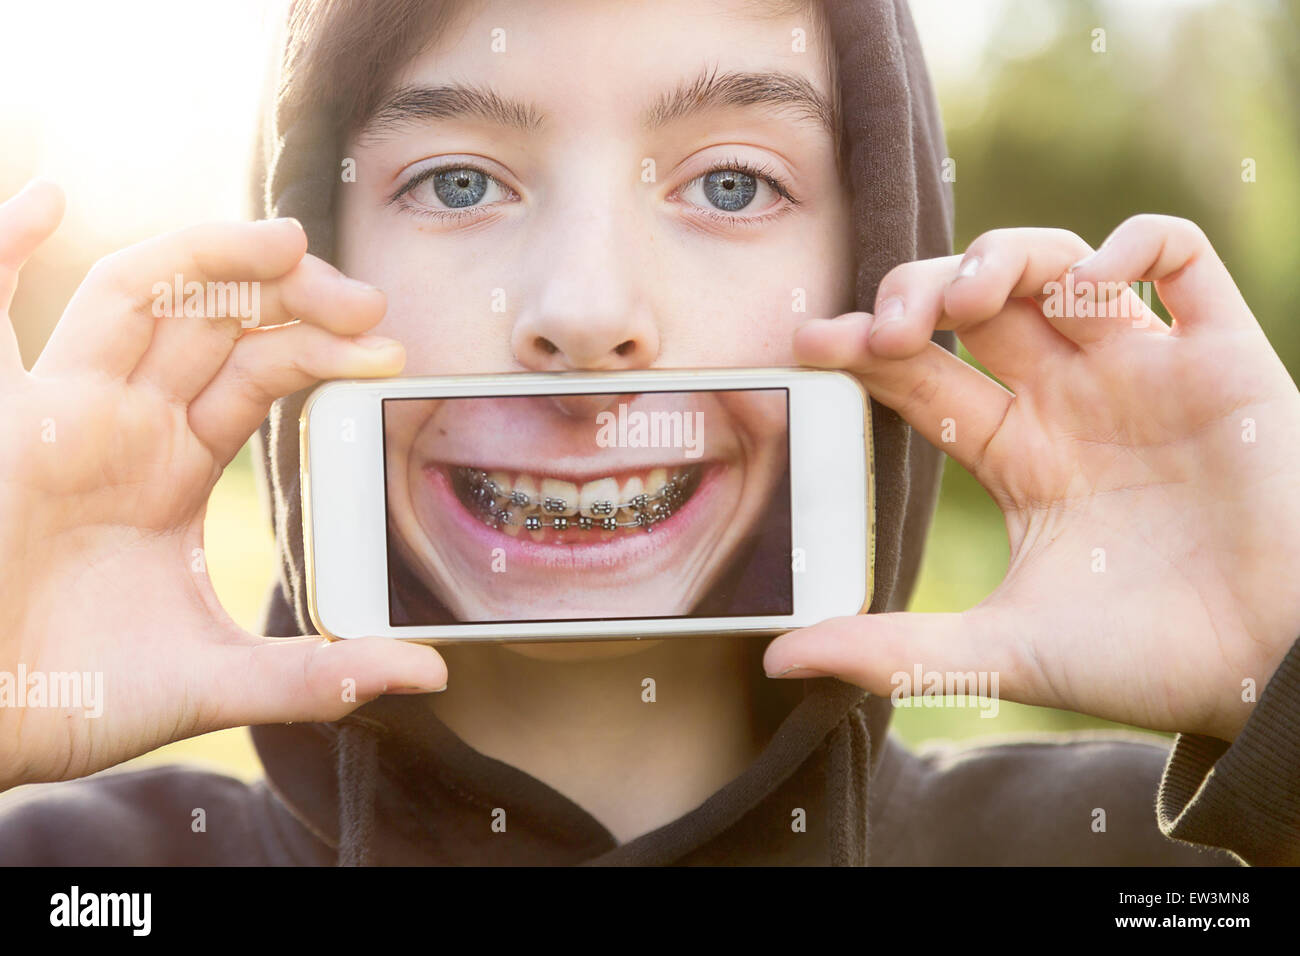 virtuelle Immobilien, Teenager, die eine Smartphone vor seinem Gesicht halten Stockfoto